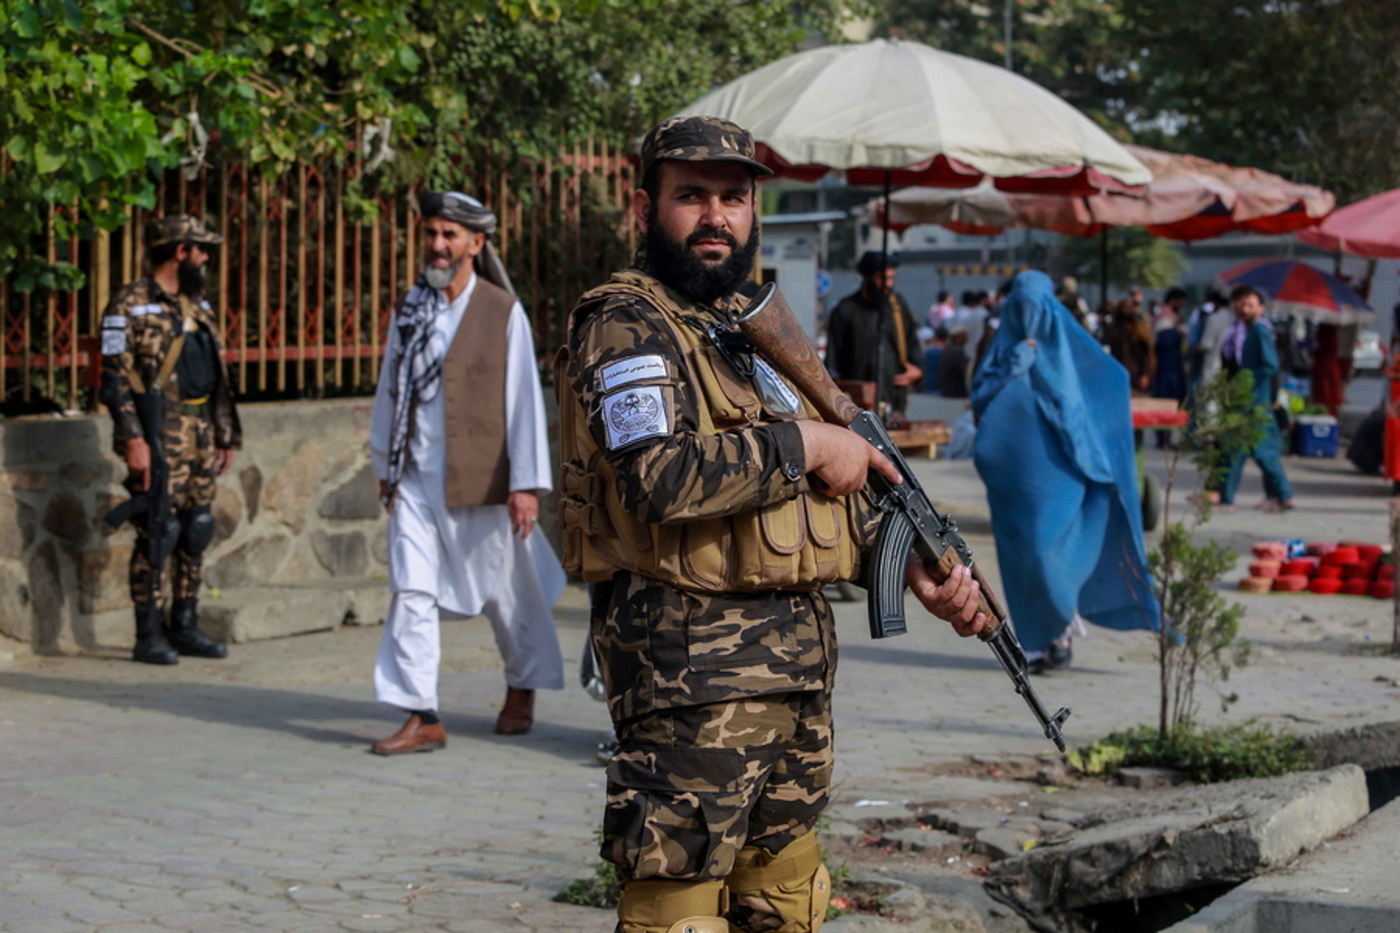 Παγκόσμια κατακραυγή για την πρώτη δημόσια εκτέλεση στο Αφγανιστάν μετά την επιστροφή των Ταλιμπάν